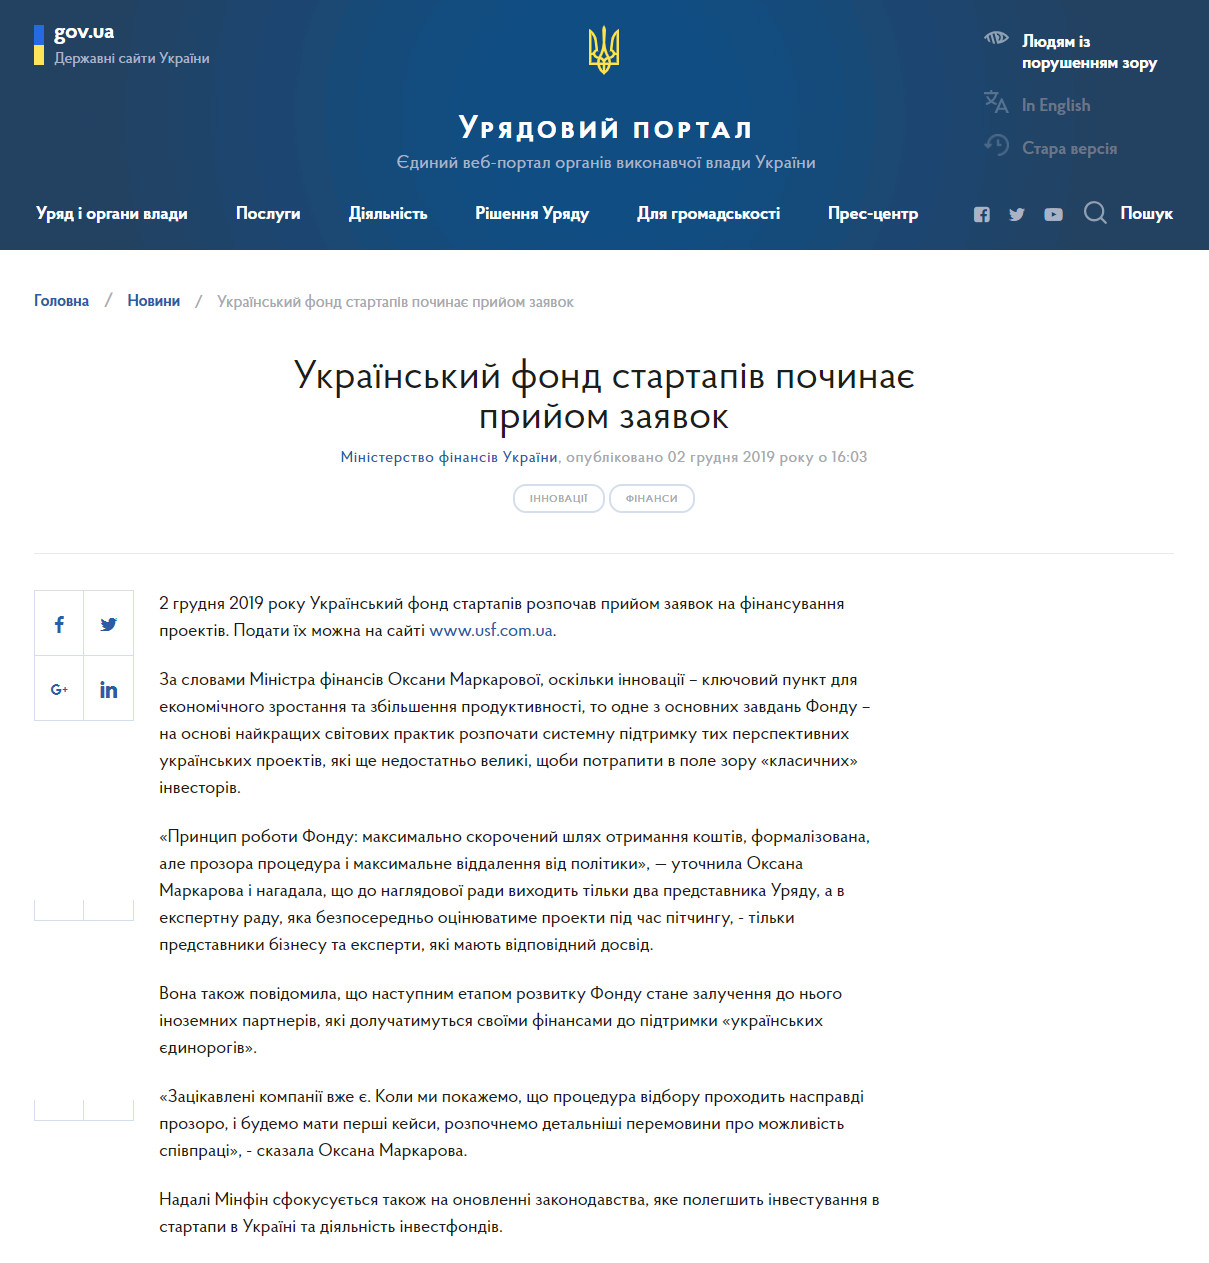 https://www.kmu.gov.ua/news/ukrayinskij-fond-startapiv-pochinaye-prijom-zayavok